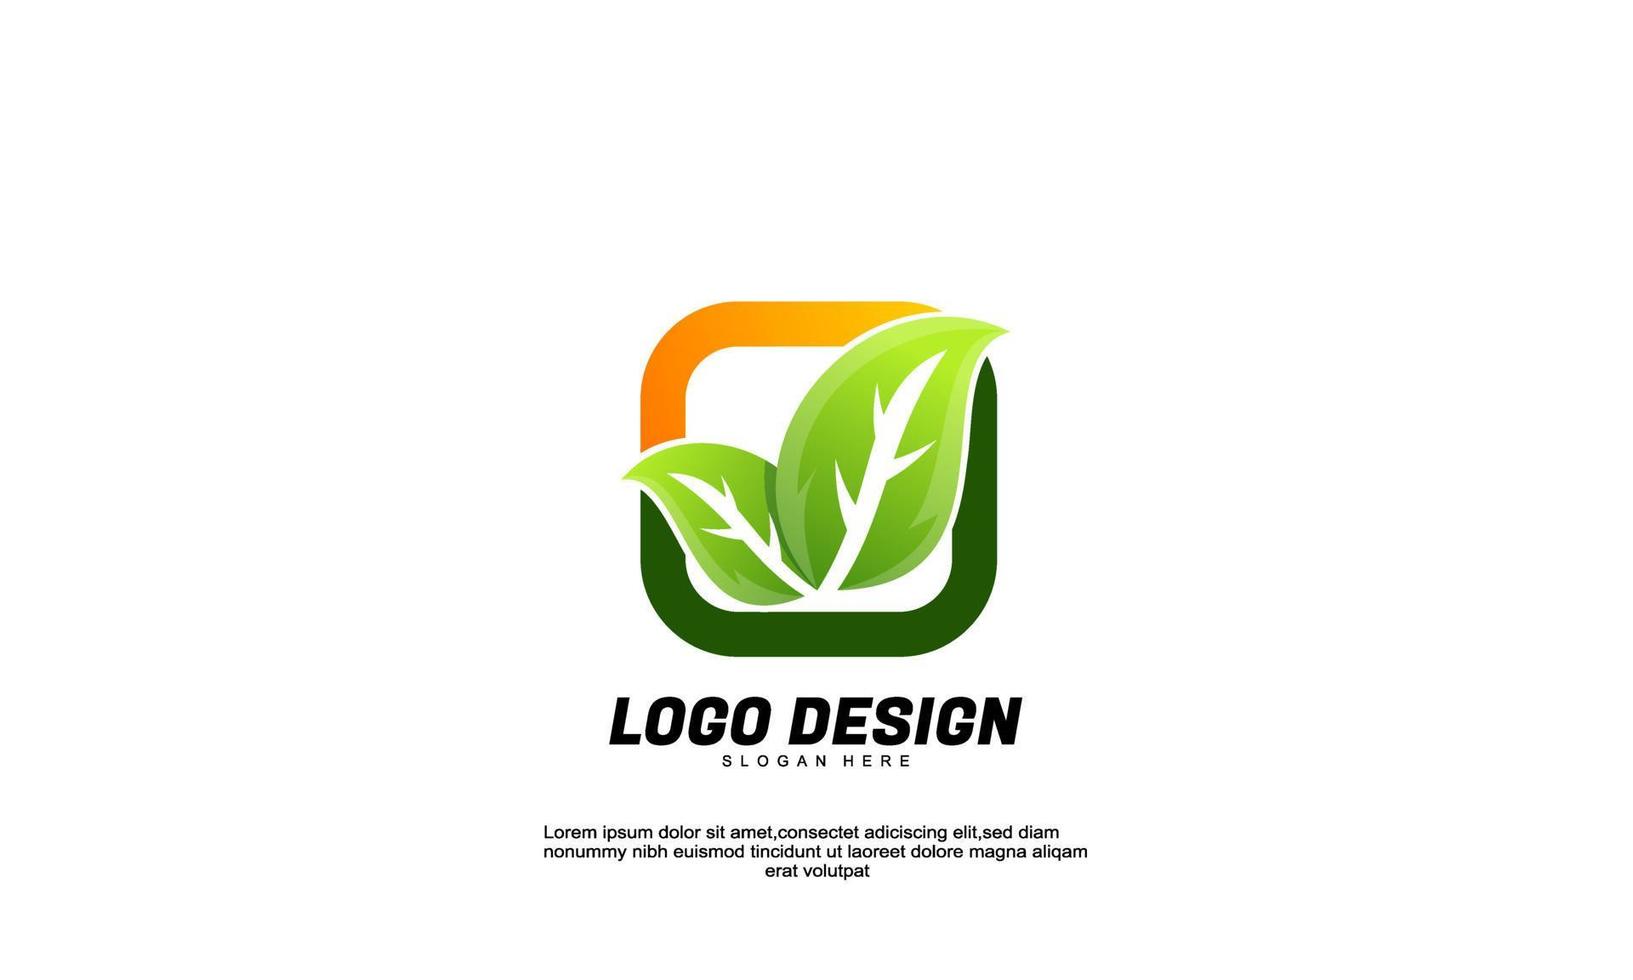 voorraad abstracte creatieve inspiratie idee branding blad en rechthoek logo voor bedrijf of bedrijf vlakke stijl ontwerp vector